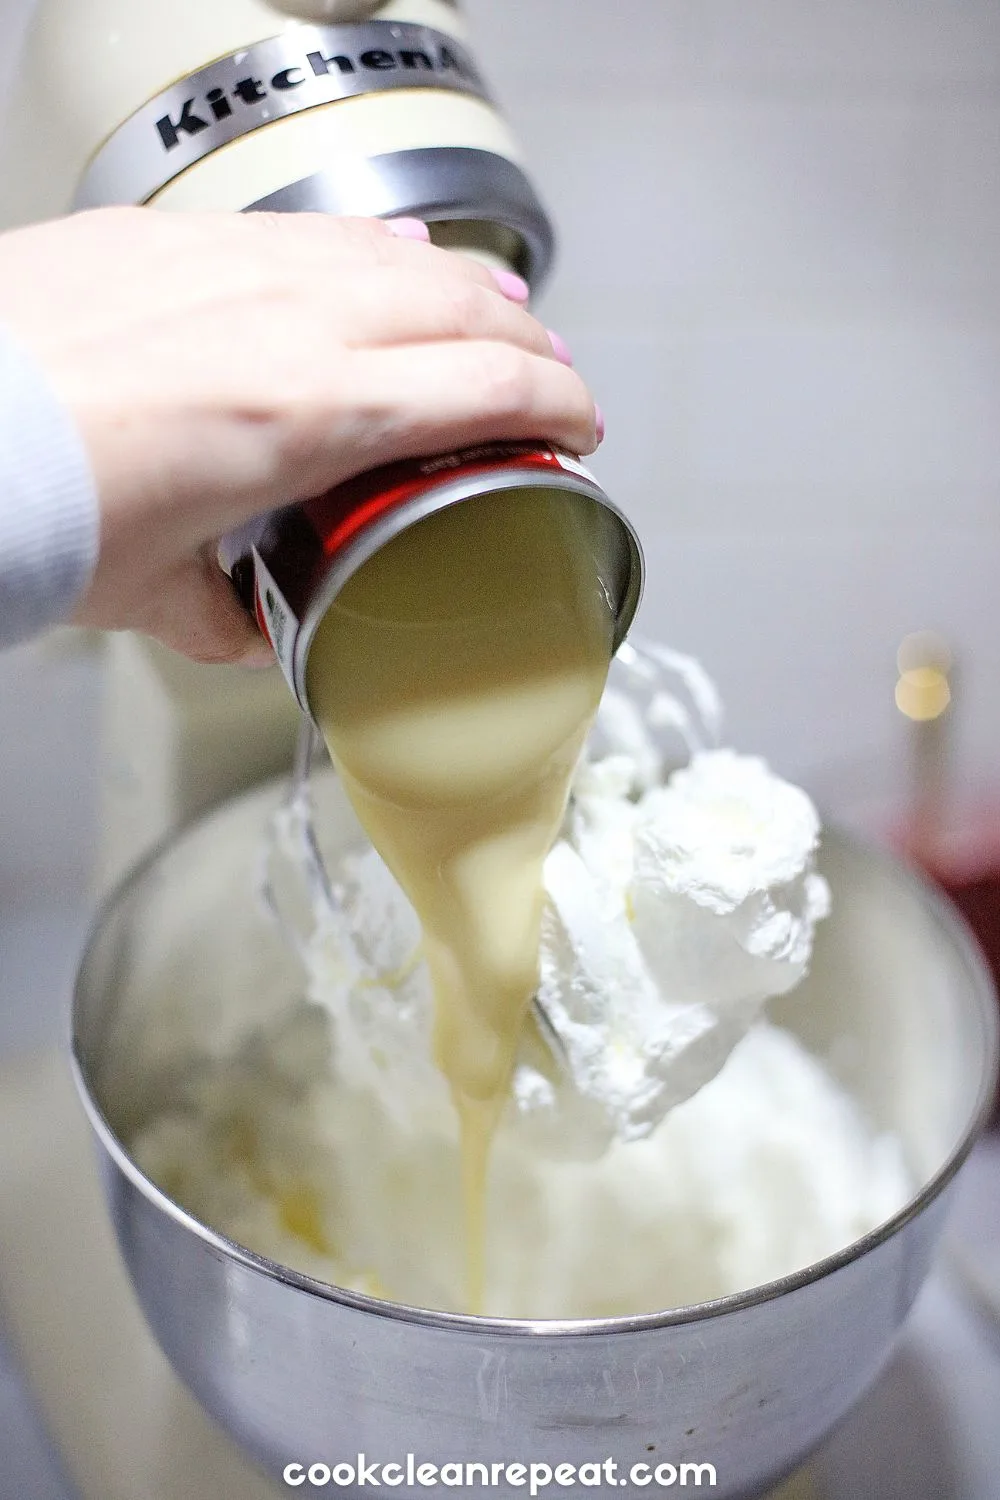 adding condensed milk to the ice cream mix